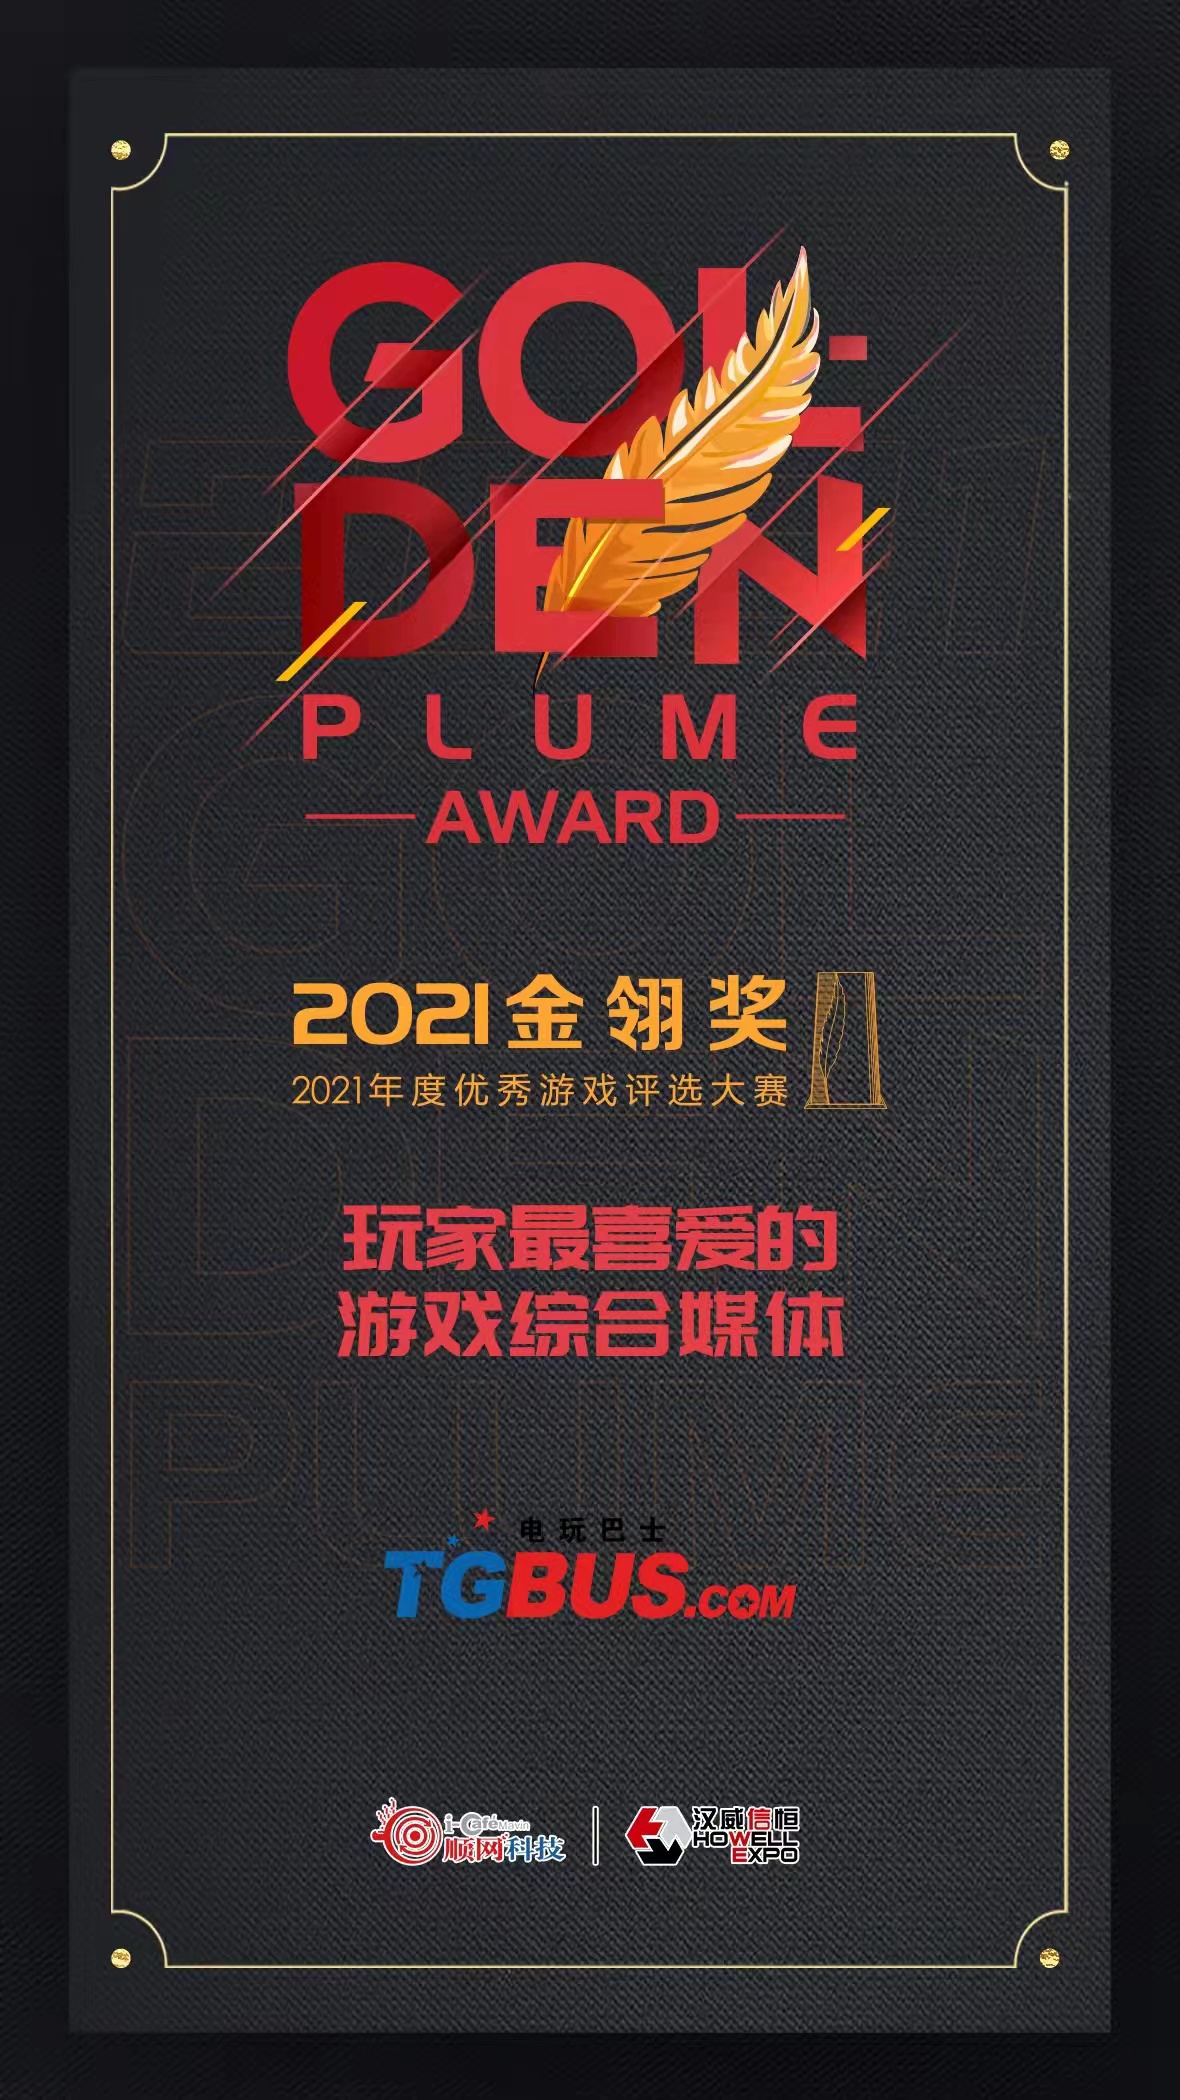 《【聚星测速注册】多牛集团旗下电玩巴士荣膺2021年“玩家最喜爱的游戏综合媒体”奖项》